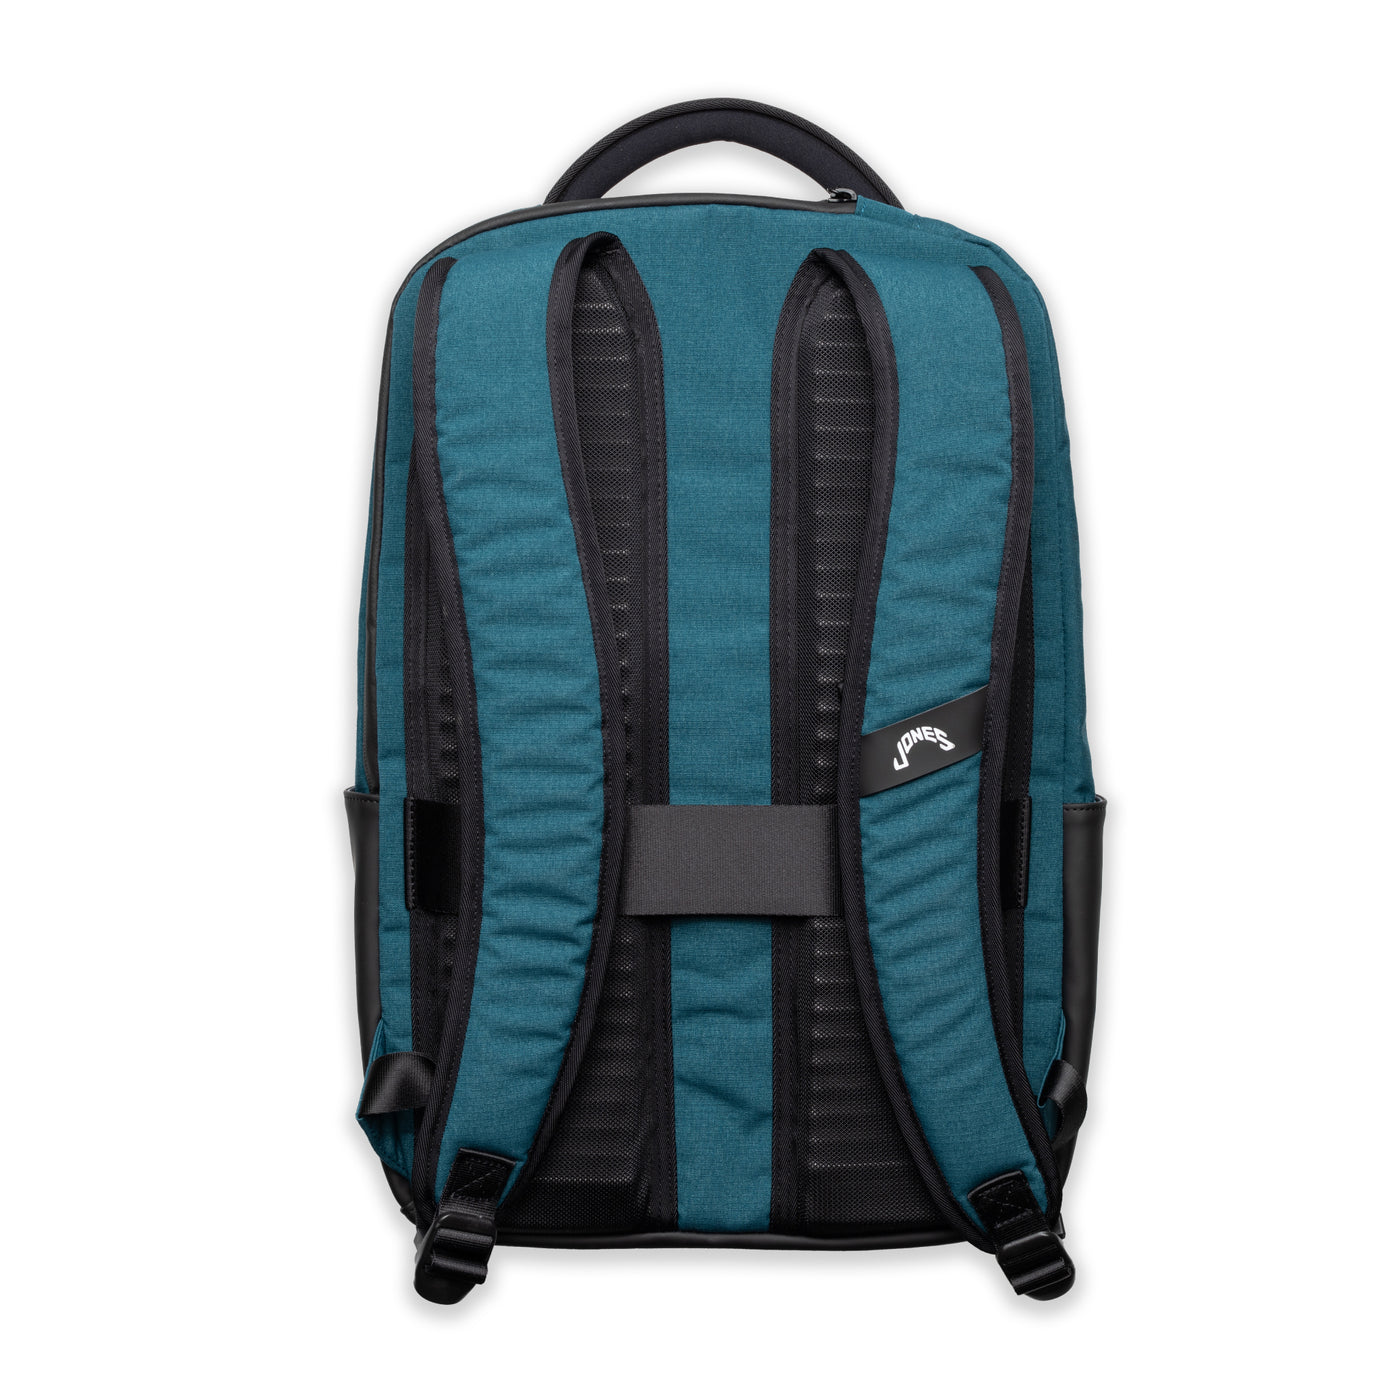 A2 Backpack R - Bondi Blue